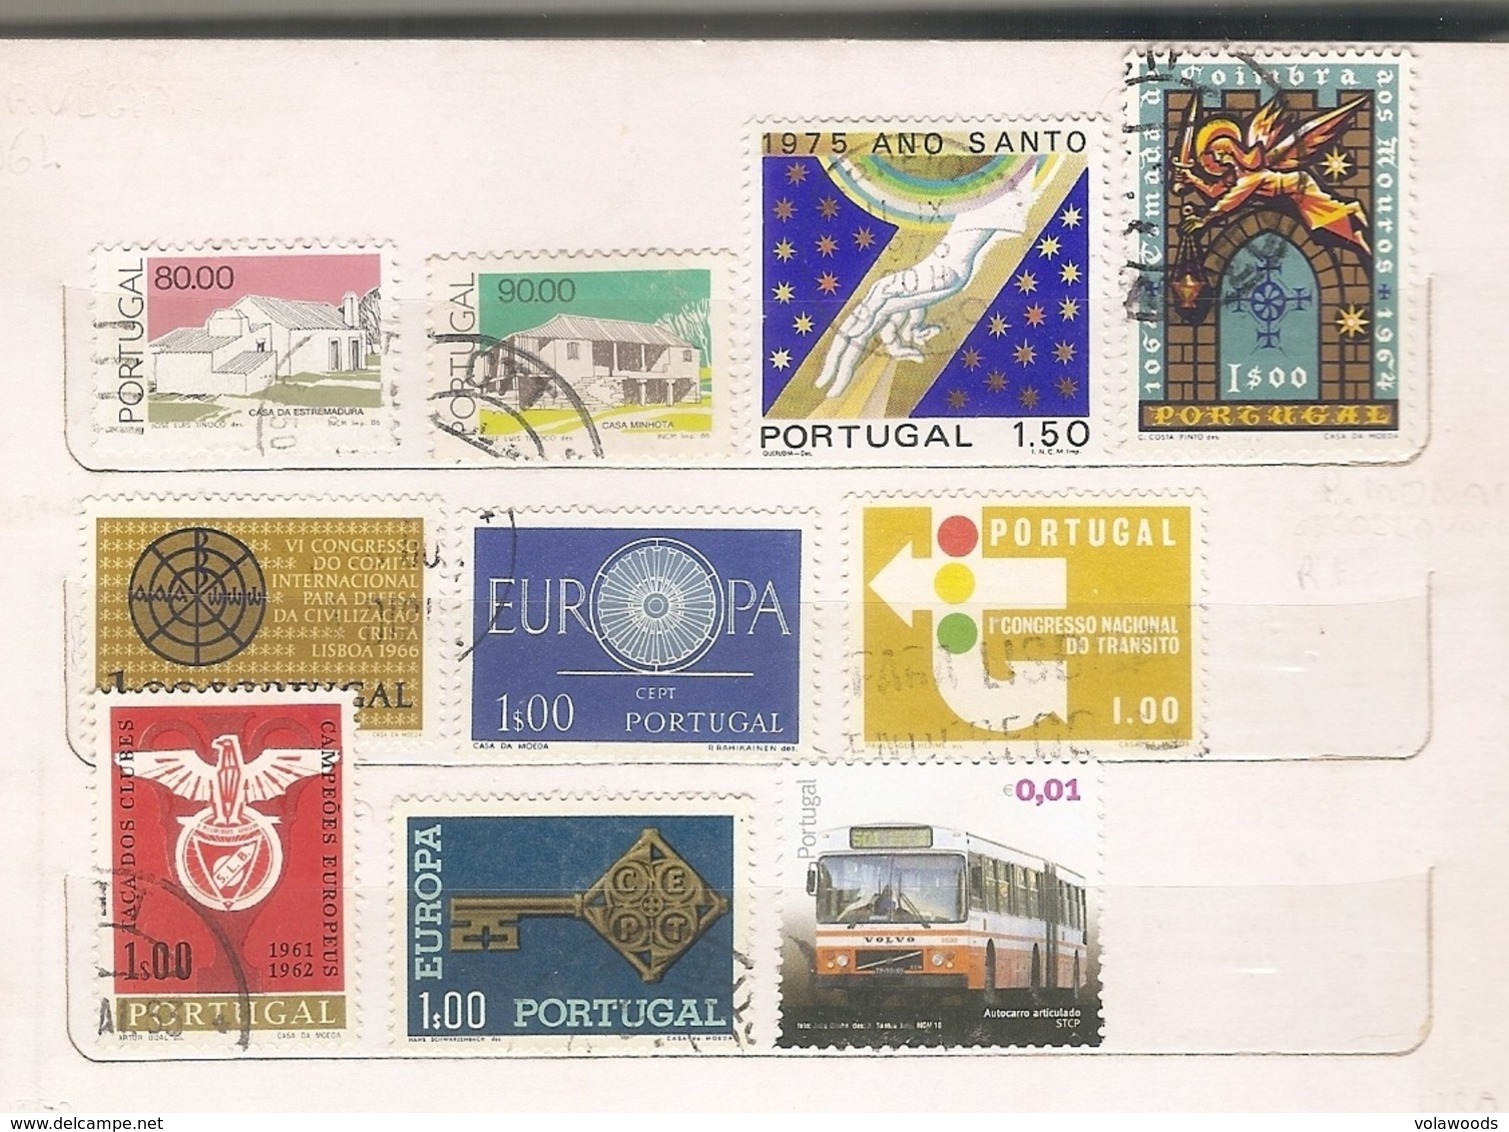 Portogallo - lotto di 190 francobolli usati e nuovi tutti diversi anche in serie complete - senza album!!!!